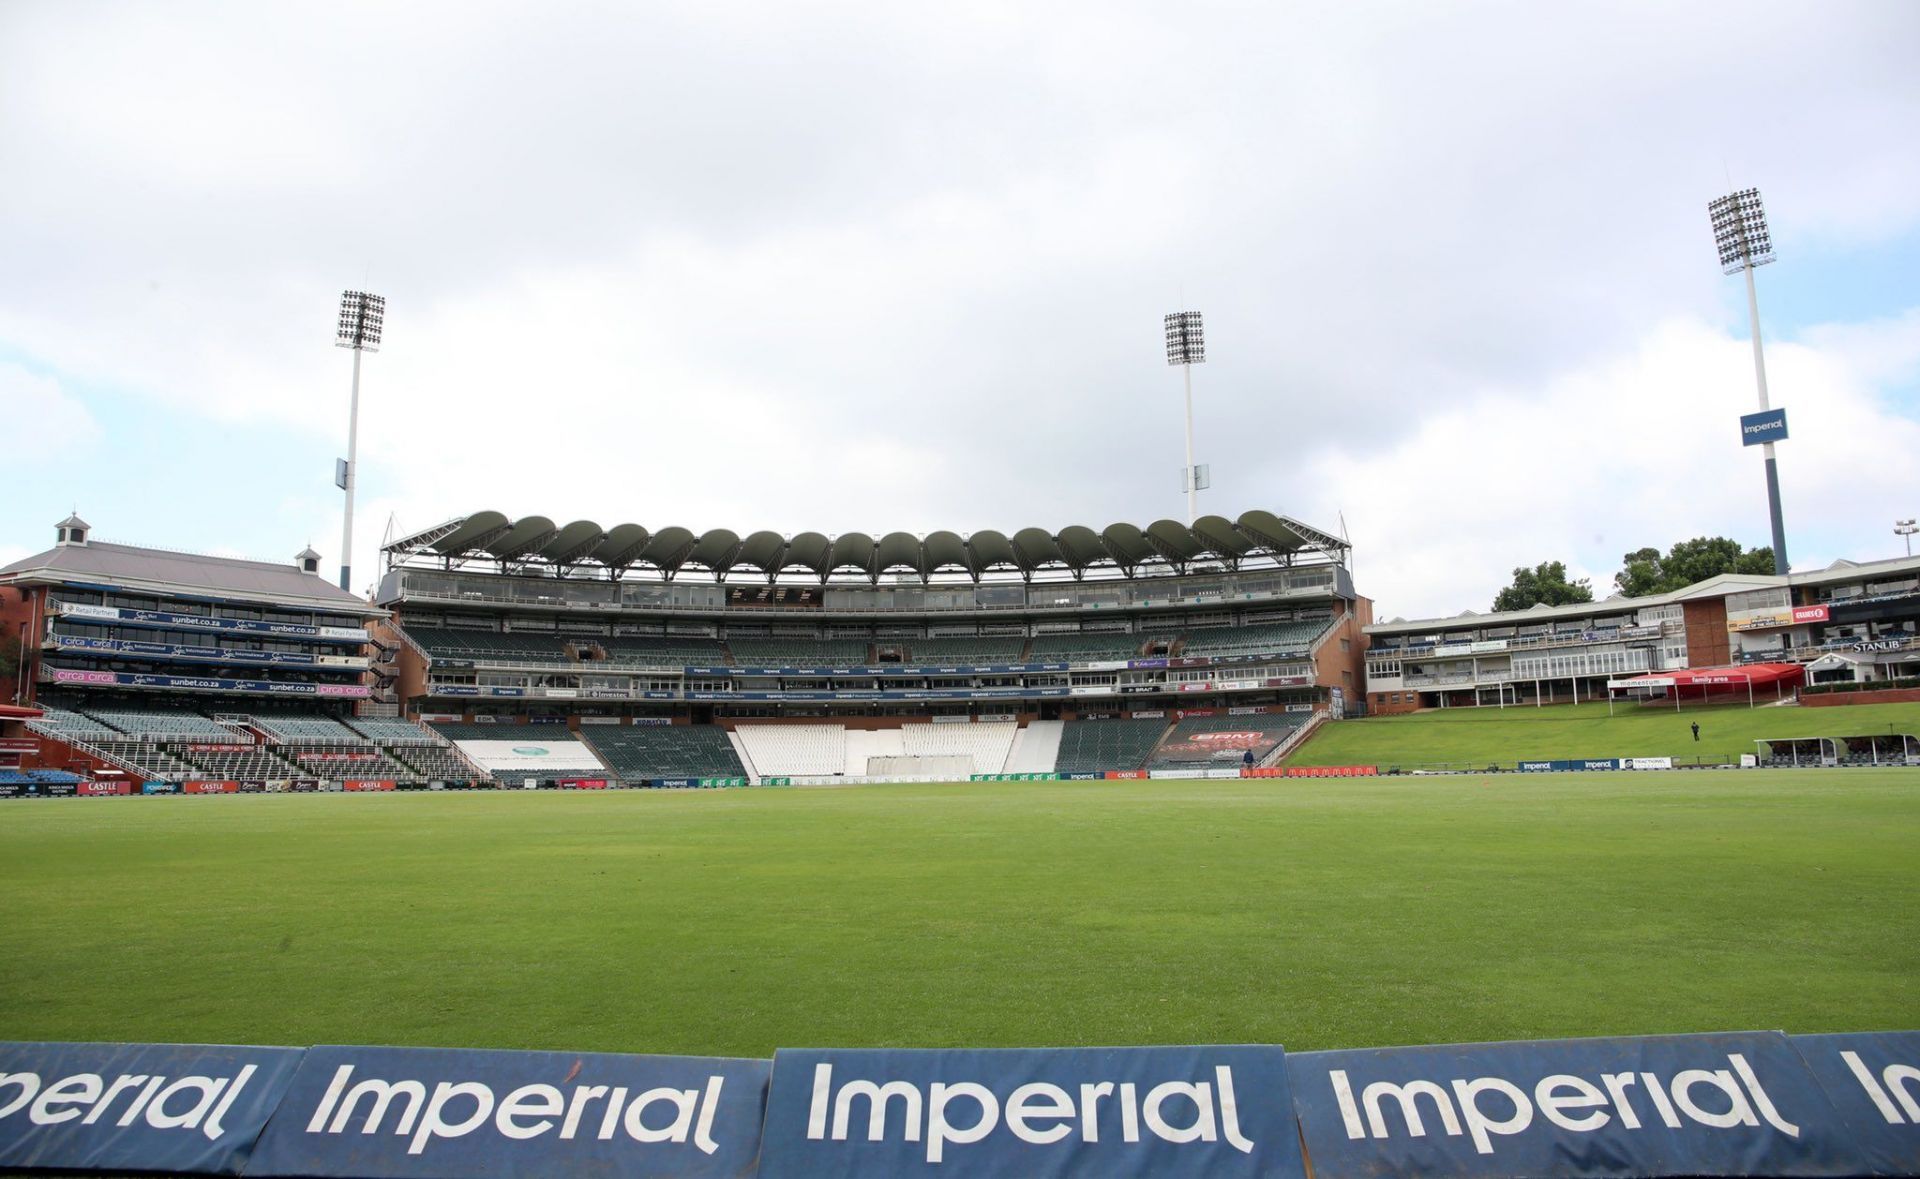 भारत और साउथ अफ्रीका के बीच इसी मैदान पर पहला टेस्ट खेला जाएगा